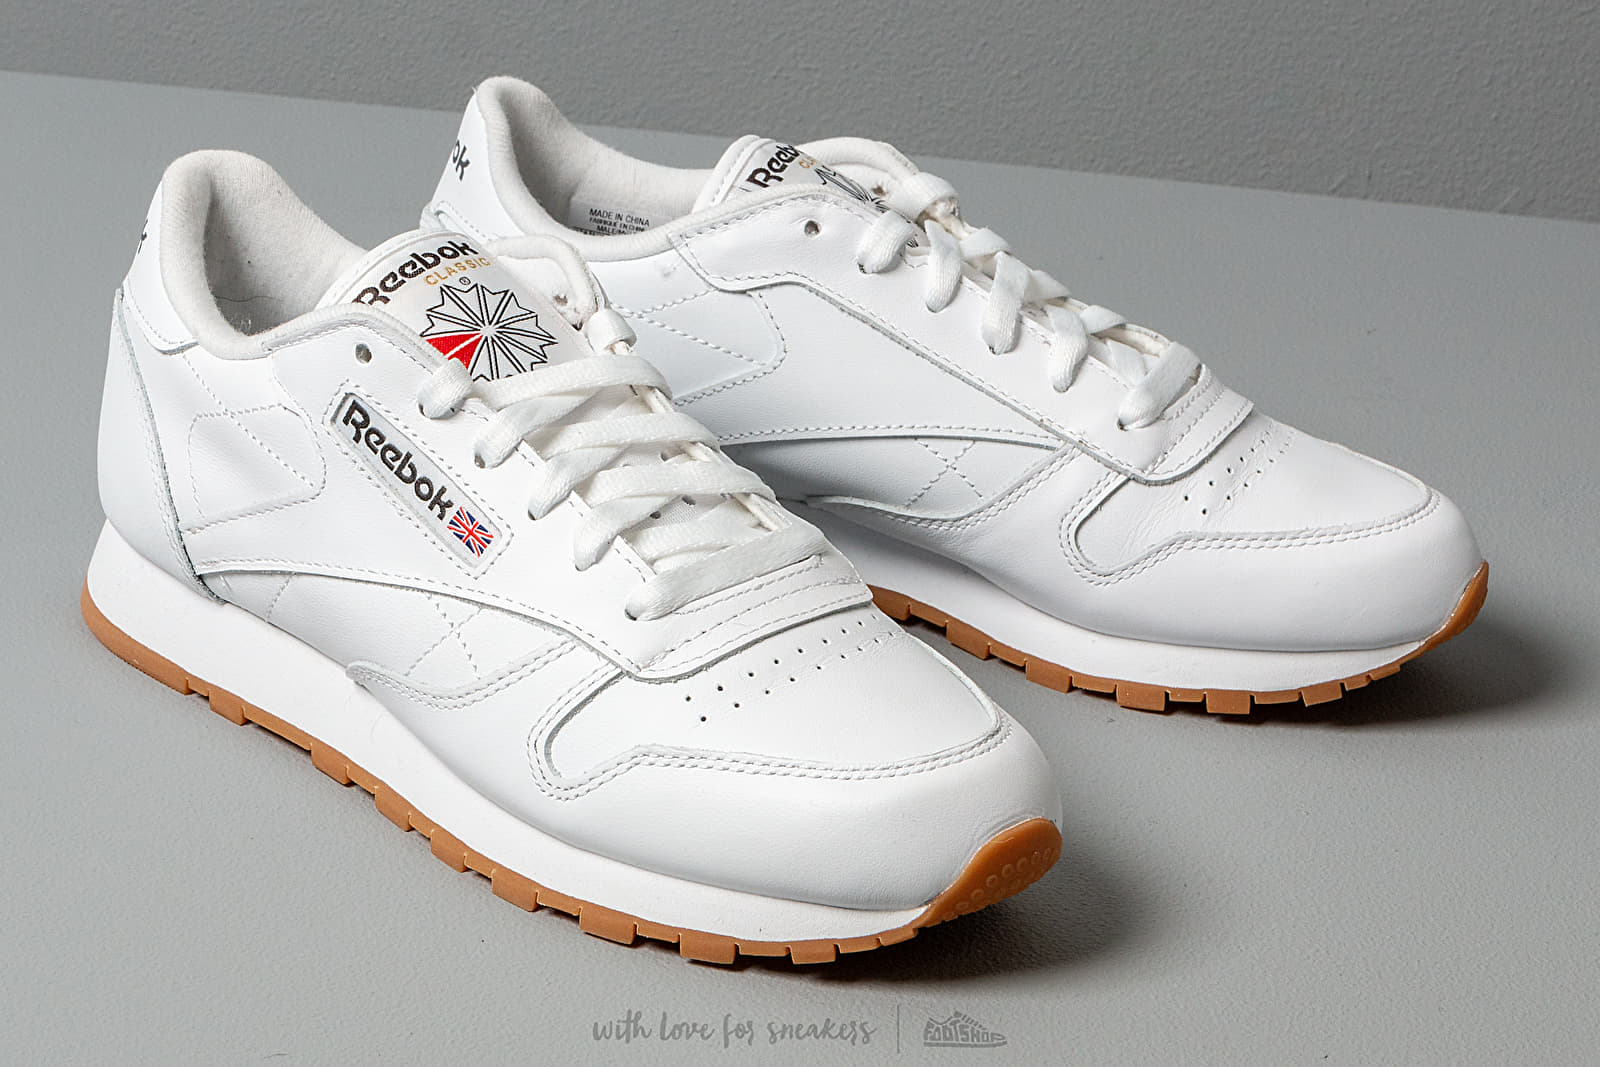 Schuhe Leather und Gum Reebok White/ Classic Footshop Herren | Sneaker